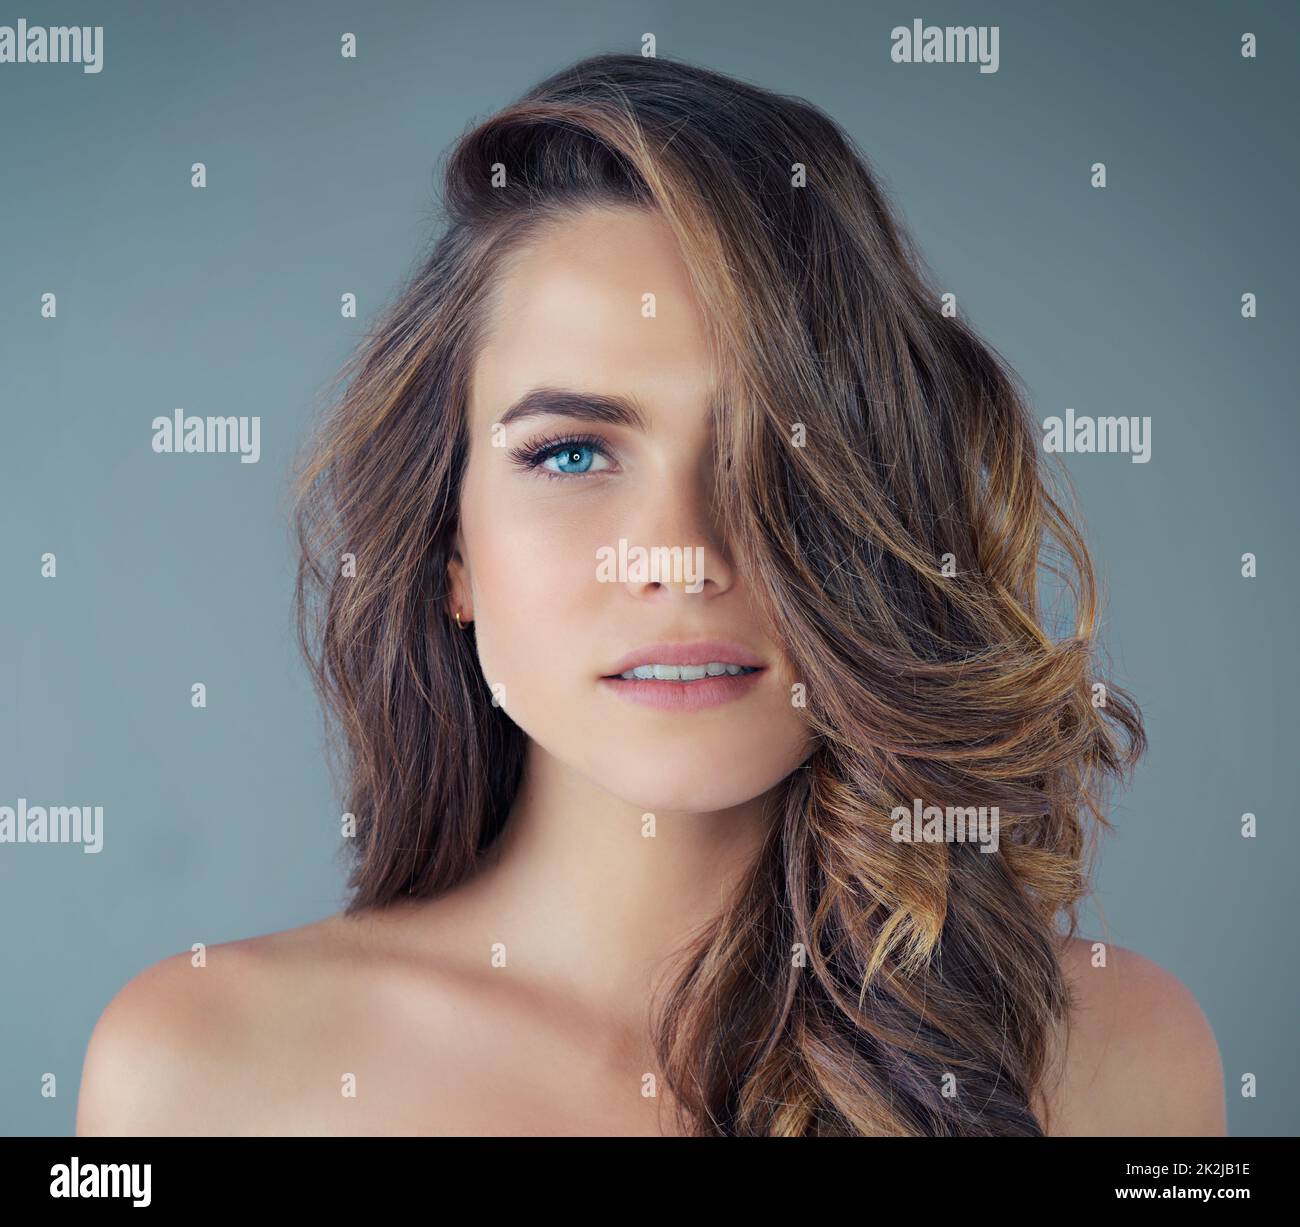 Schönheit liegt im Auge des Betrachters. Beschnittenes Porträt einer schönen jungen Frau, die vor grauem Hintergrund im Studio posiert. Stockfoto